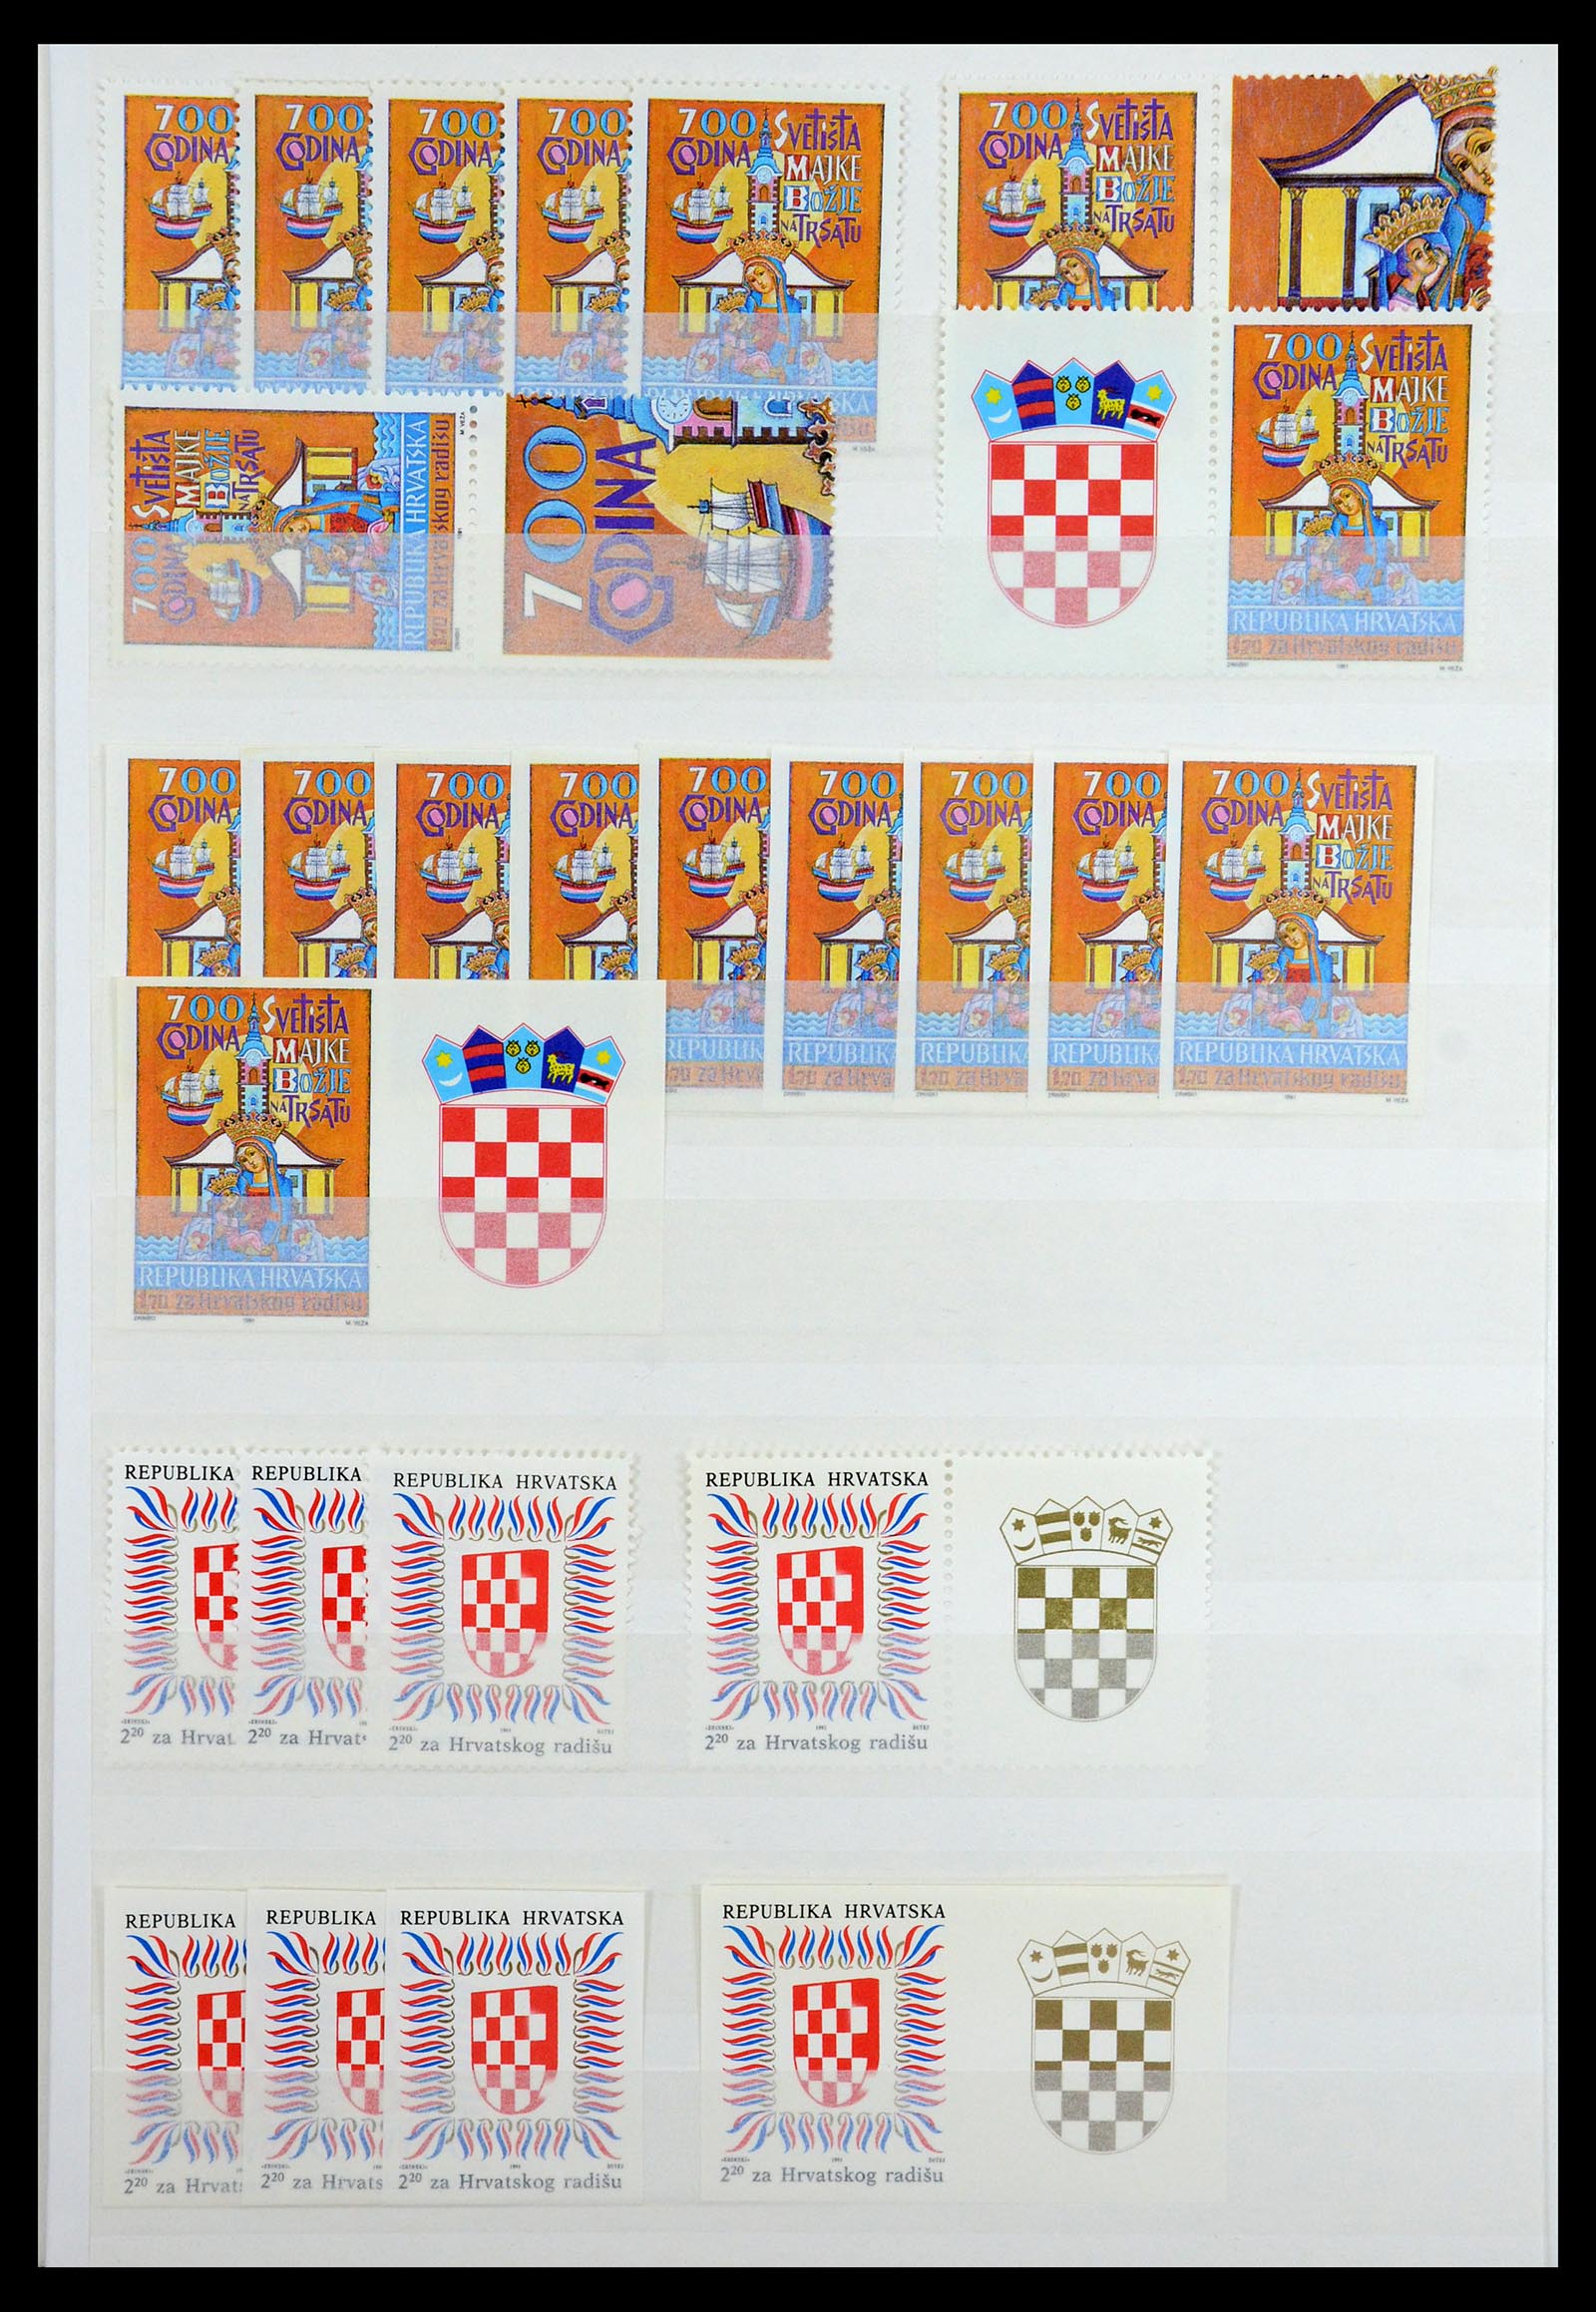 36461 050 - Stamp collection 36461 Slovenia, Croatia and Bosnia-Herzegovina MNH 1991